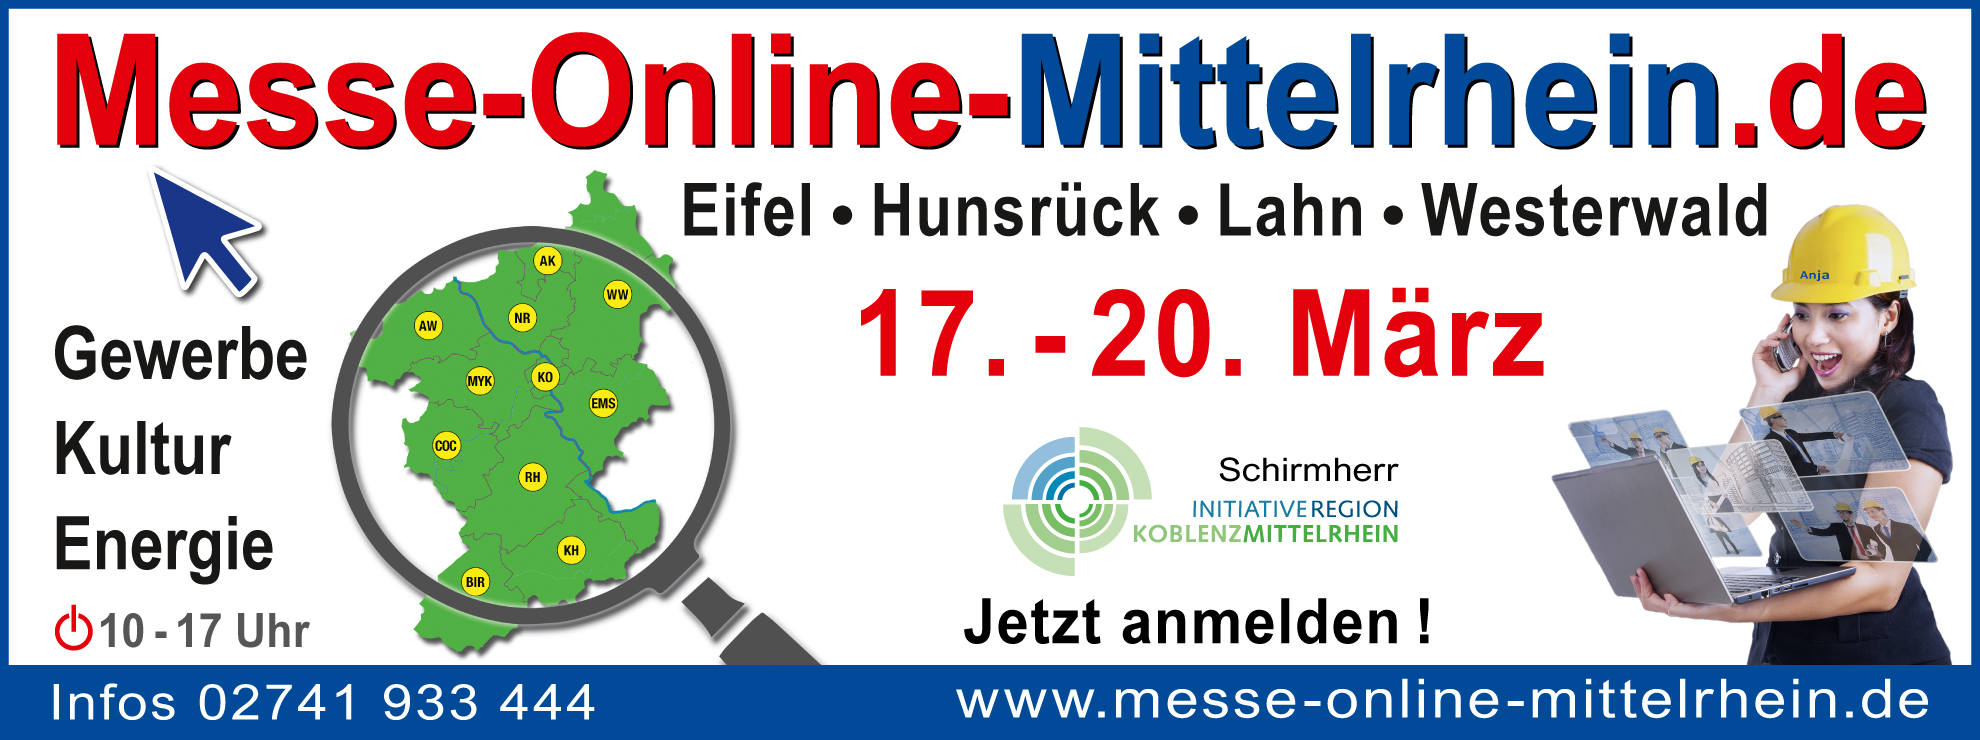 Messe Mittelrhein webbanner 1980x640px